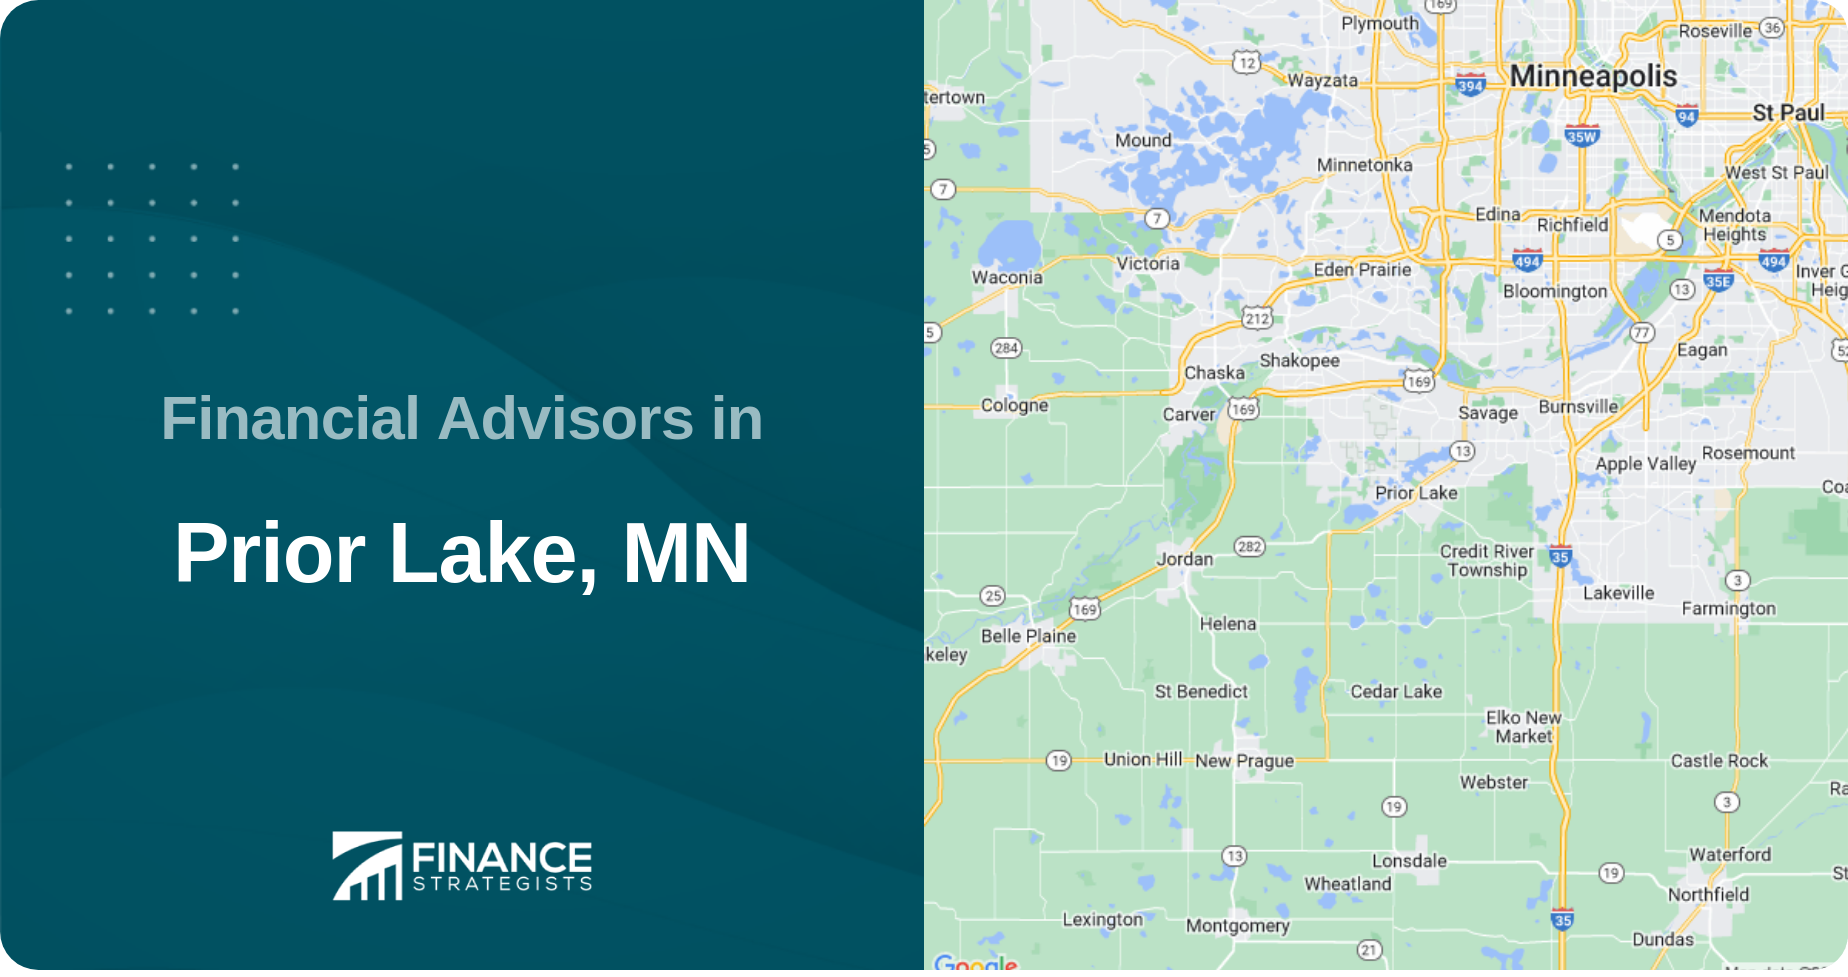 Financial Advisors in Prior Lake, MN